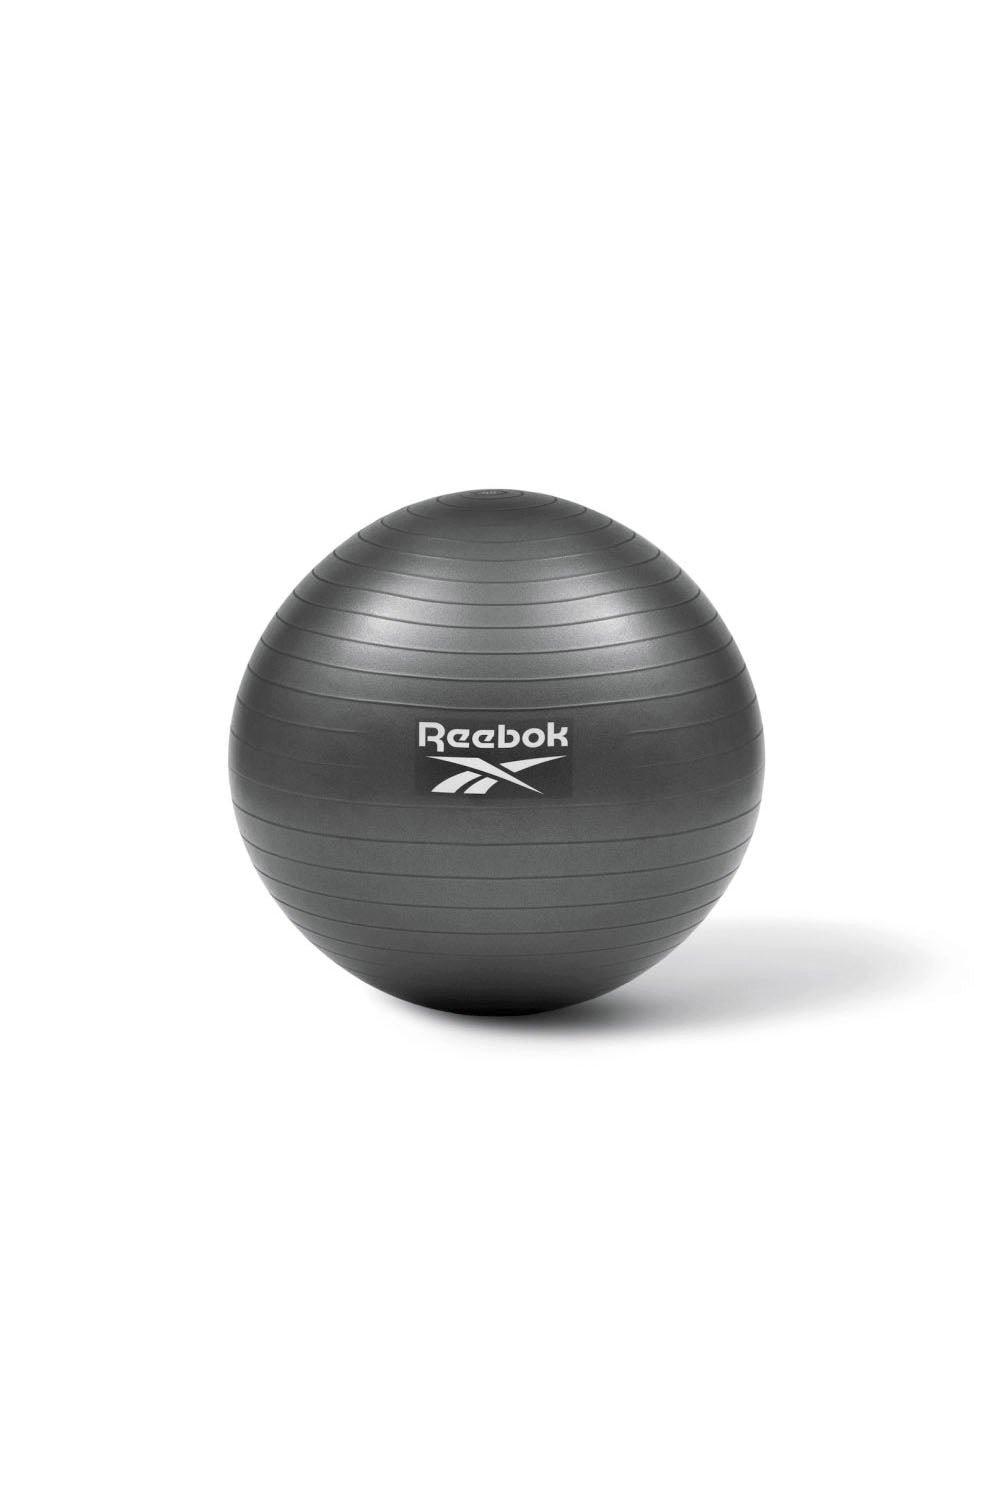 Reebok 75cm Gym Ball|dark grey